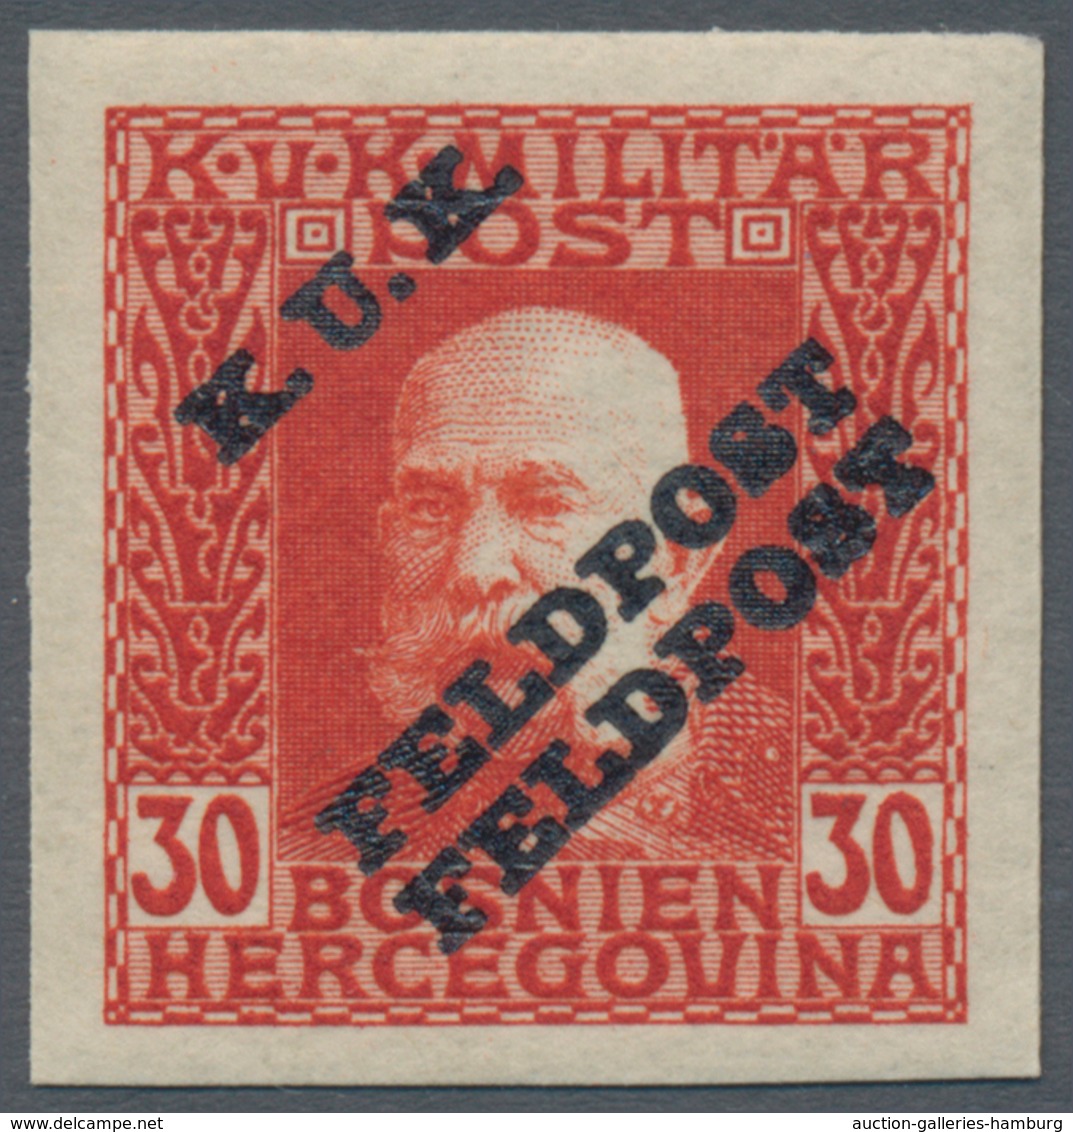 Österreichisch-Ungarische Feldpost - Allgemeine Ausgabe: 1915, 1 H - 10 K Franz Joseph ungezähnt mit